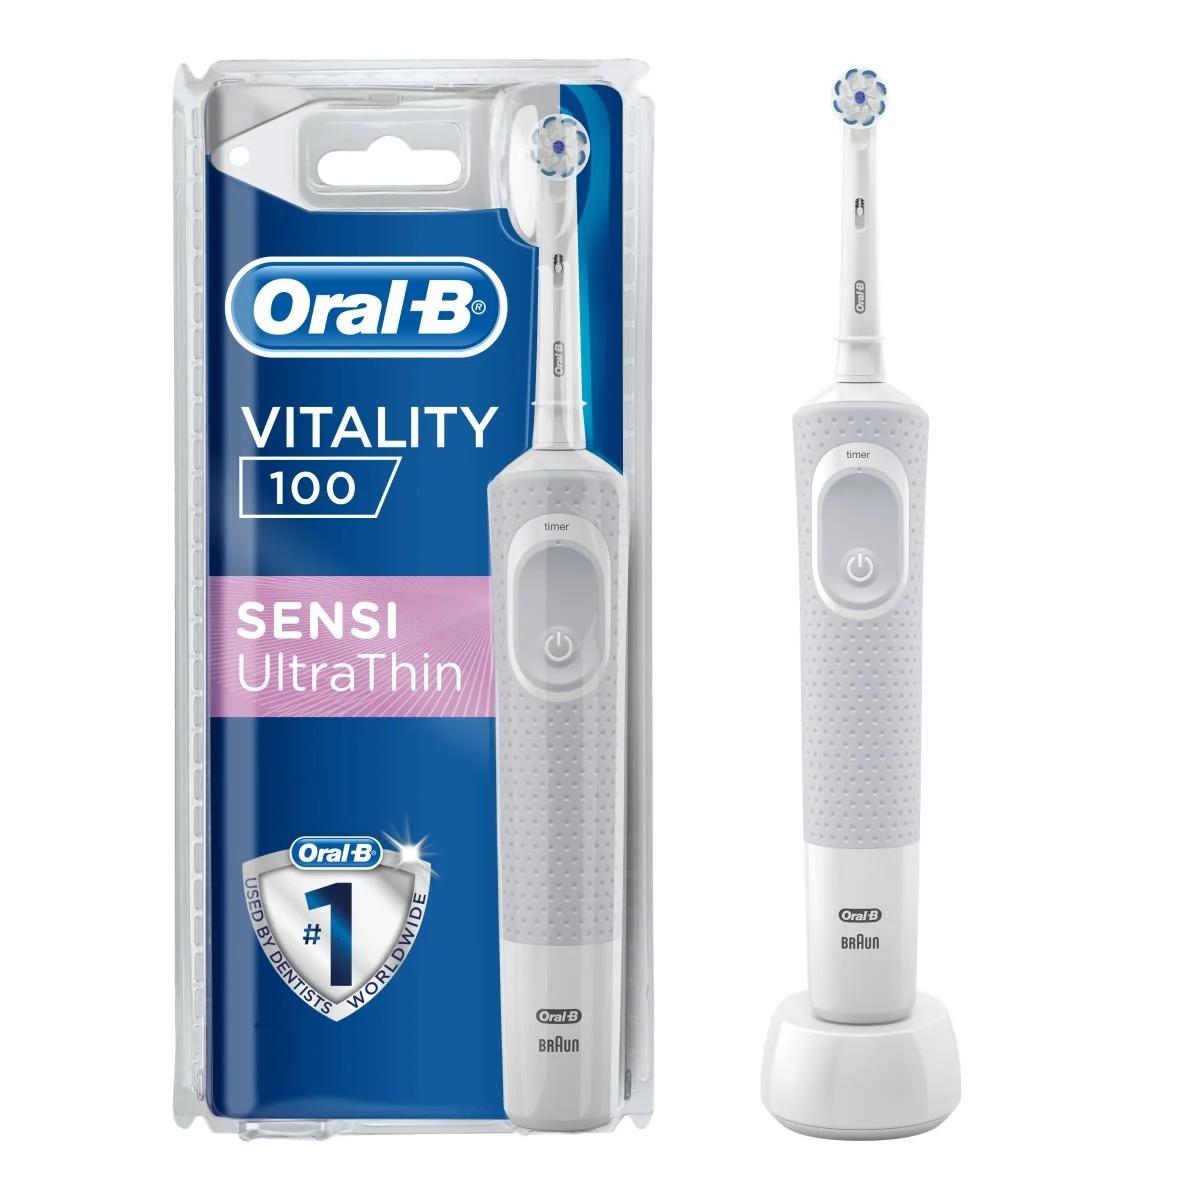 Image - Oral-B Vitality 100 Sensi Ultrathin Beyaz Şarj Edilebilir Diş Fırçası -Main 